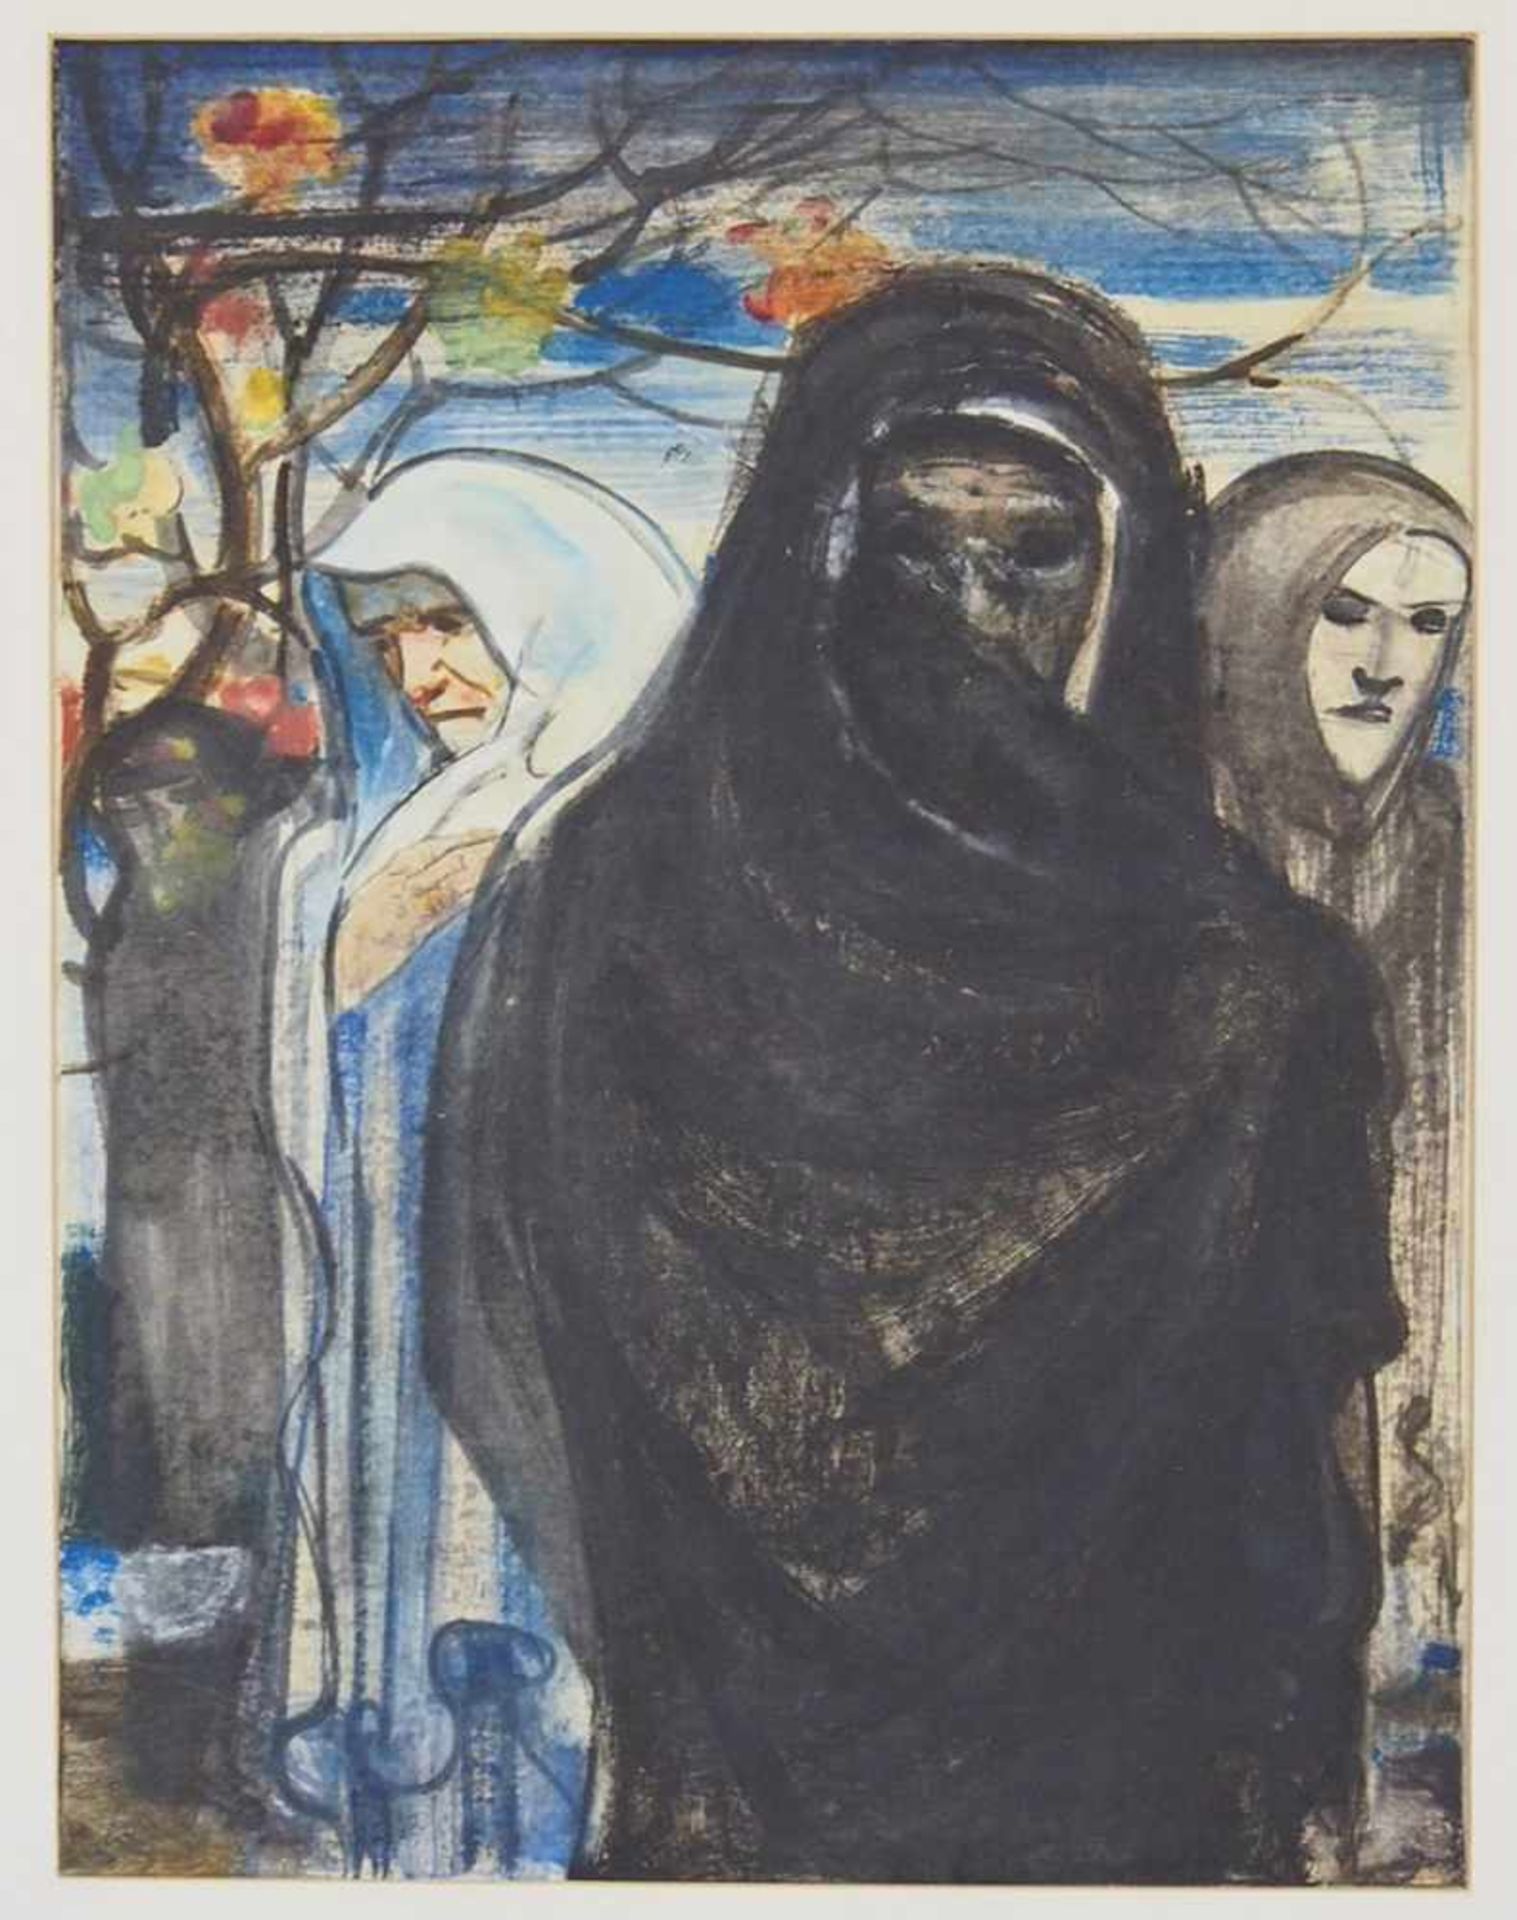 WEINZHEIMER, Friedrich August1882-1947Betende alte FrauAquarell auf Papier, signiert (Bleistift) - Image 3 of 3